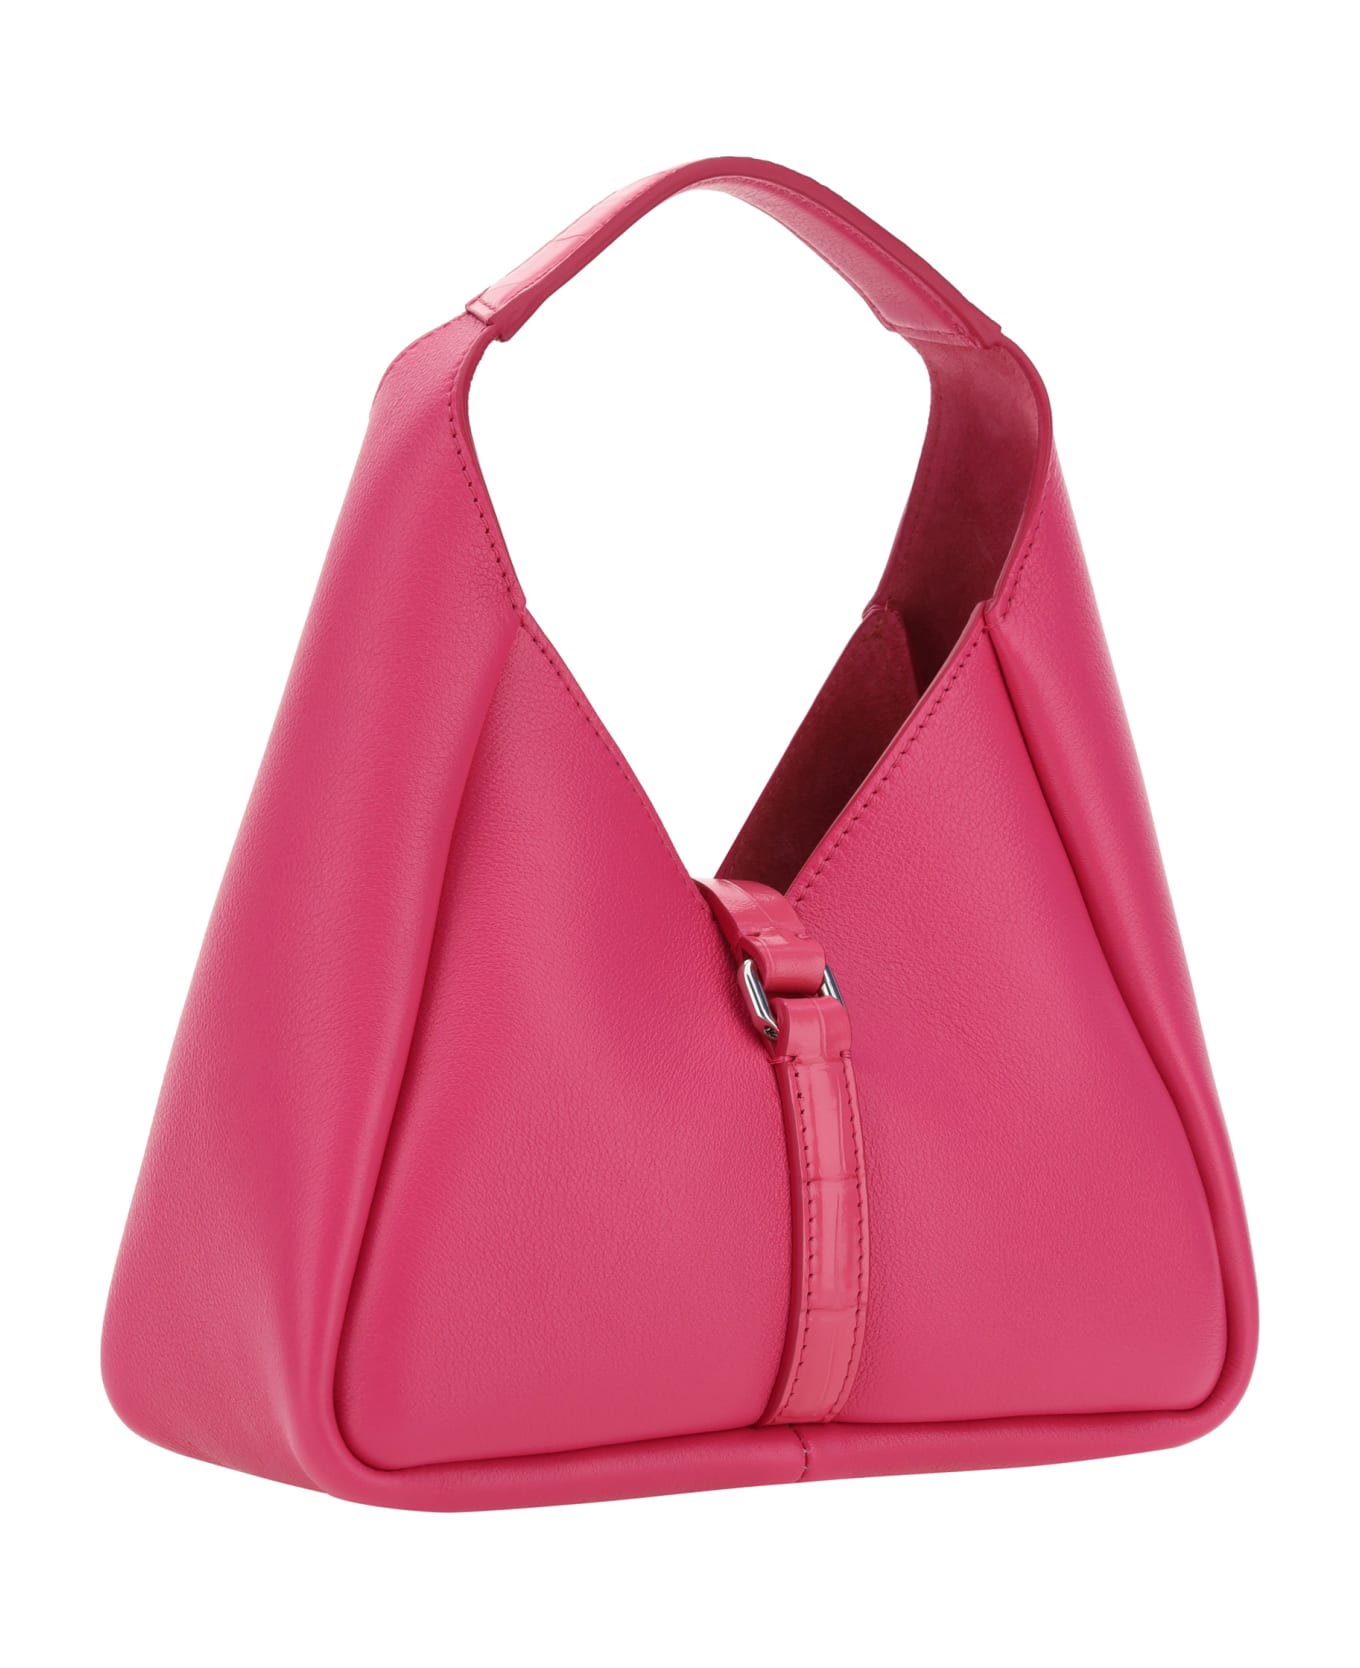 Givenchy G-hobo Mini Bag - Pink